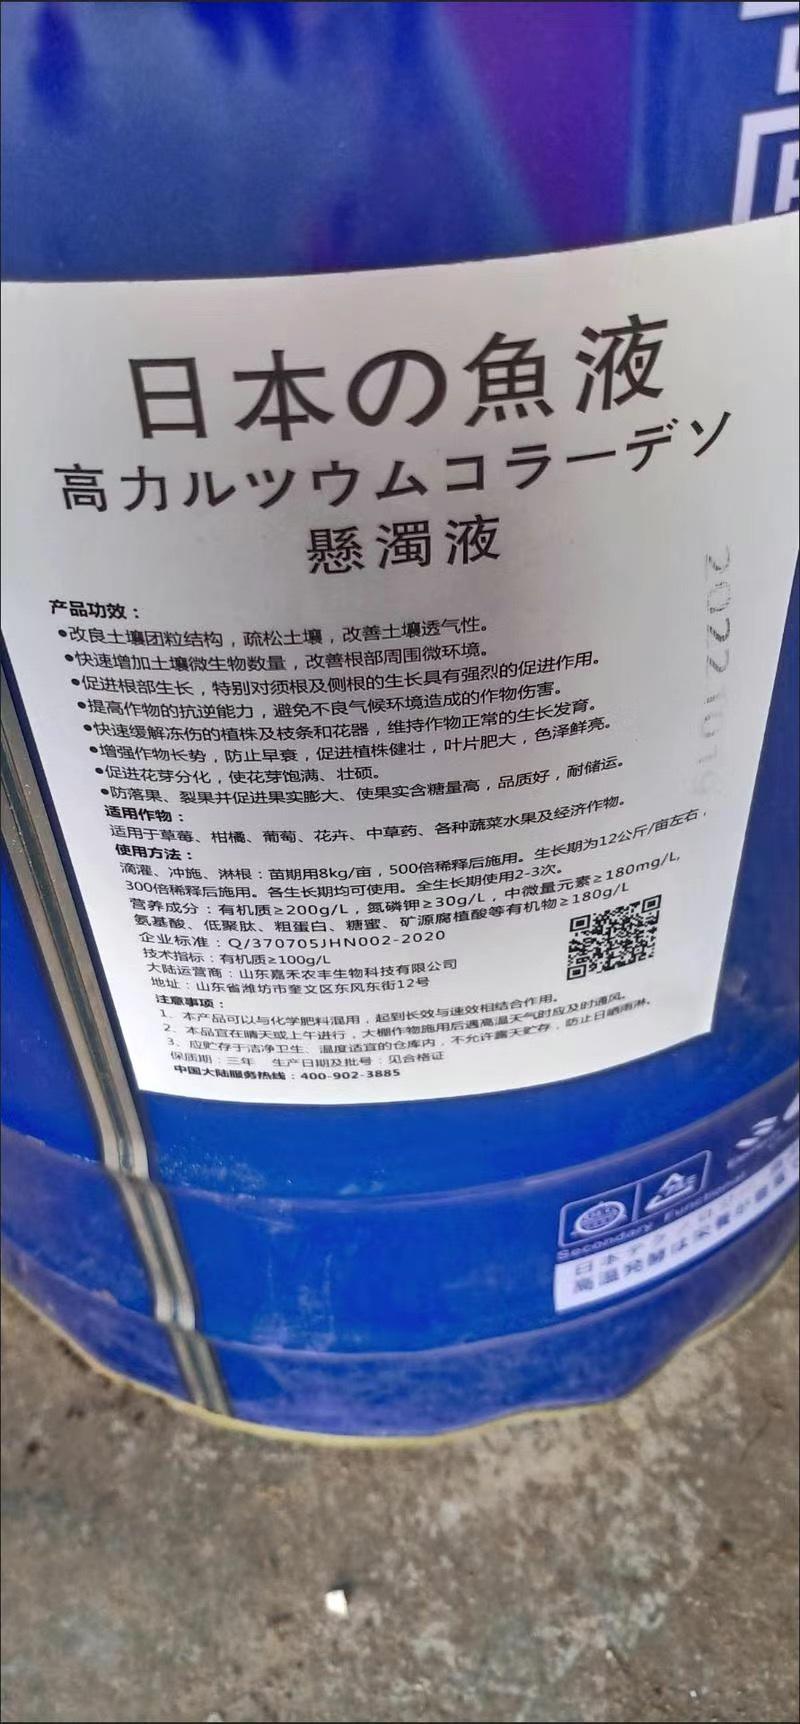 酶解日本铁桶海藻多糖鱼蛋白水溶肥冲施肥氨基酸蔬菜